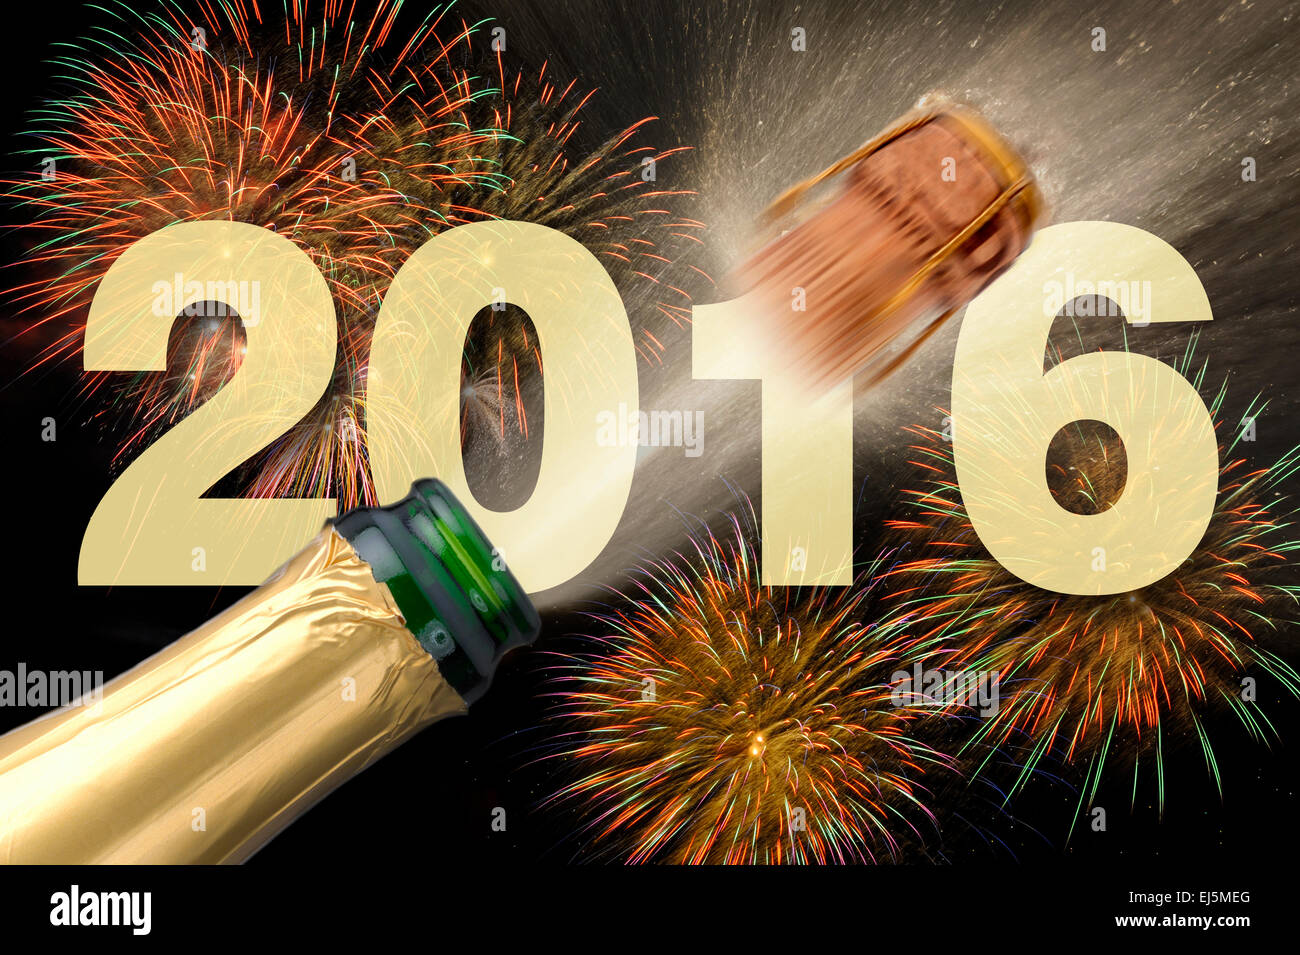 Feliz año nuevo 2016 con chasquidos de corcho de champán y fuegos artificiales Foto de stock